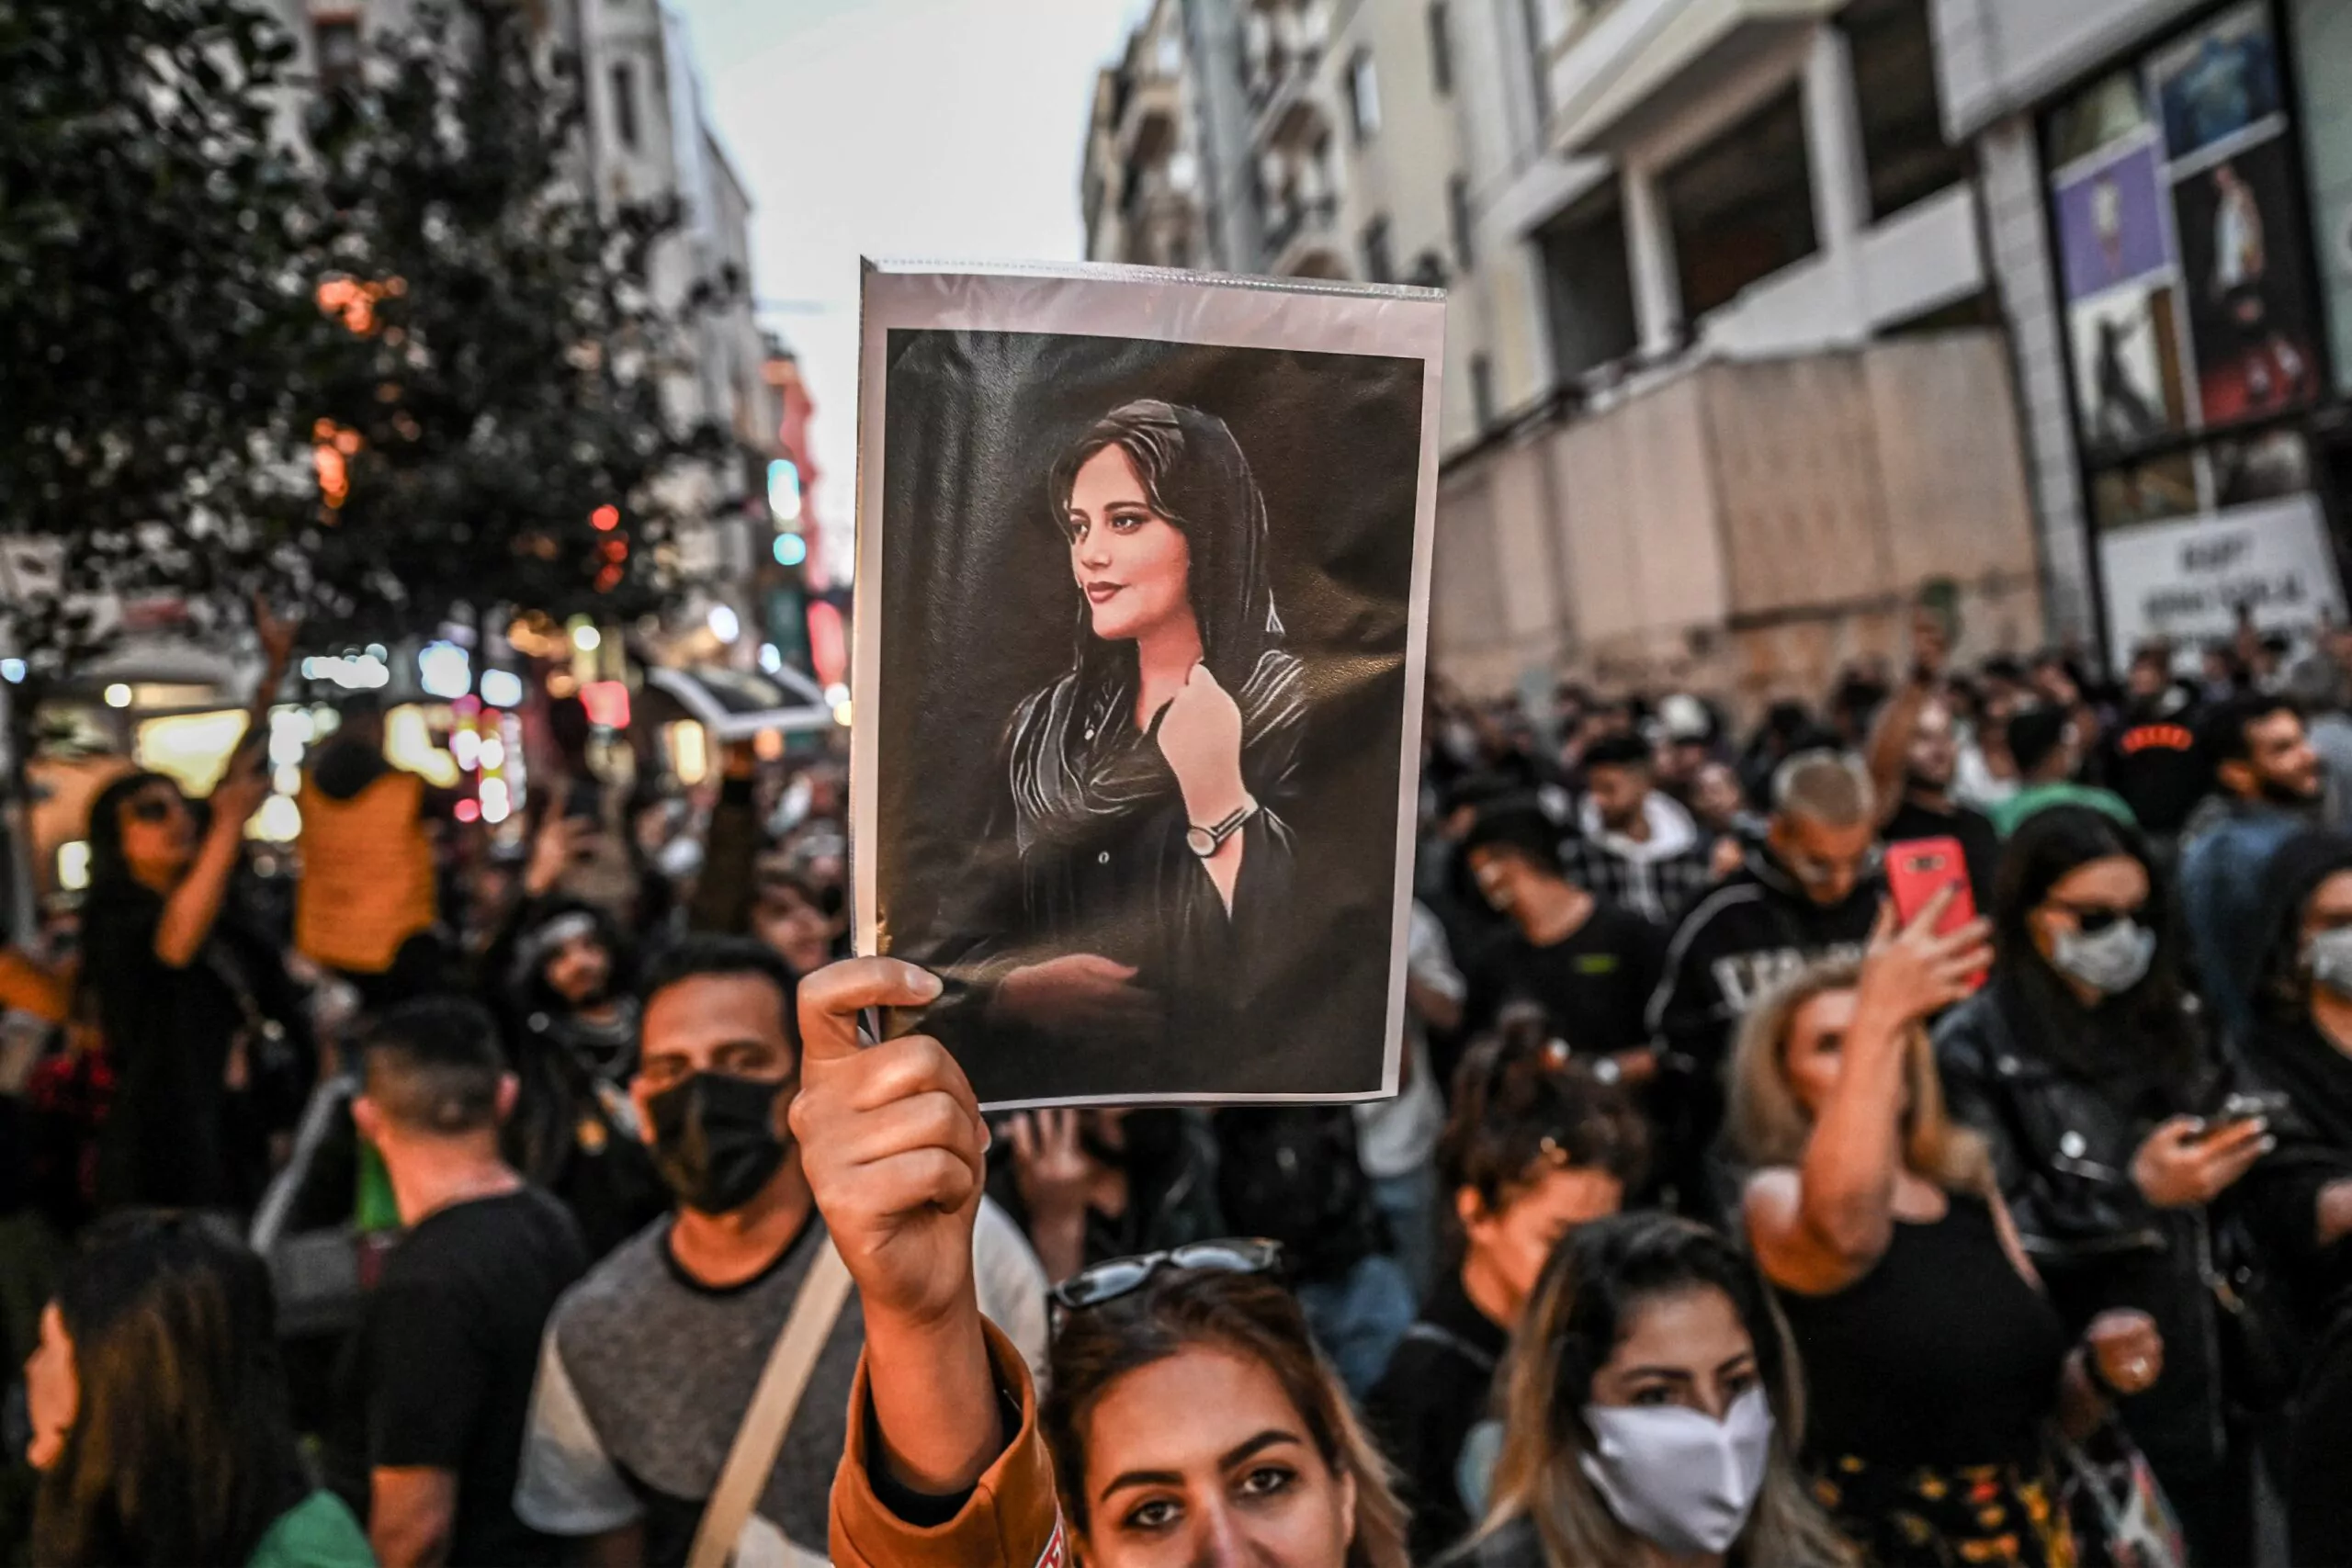 المظاهرات متواصلة بإيران والمحتجون يرفعون شعار “الموت للدكتاتور”